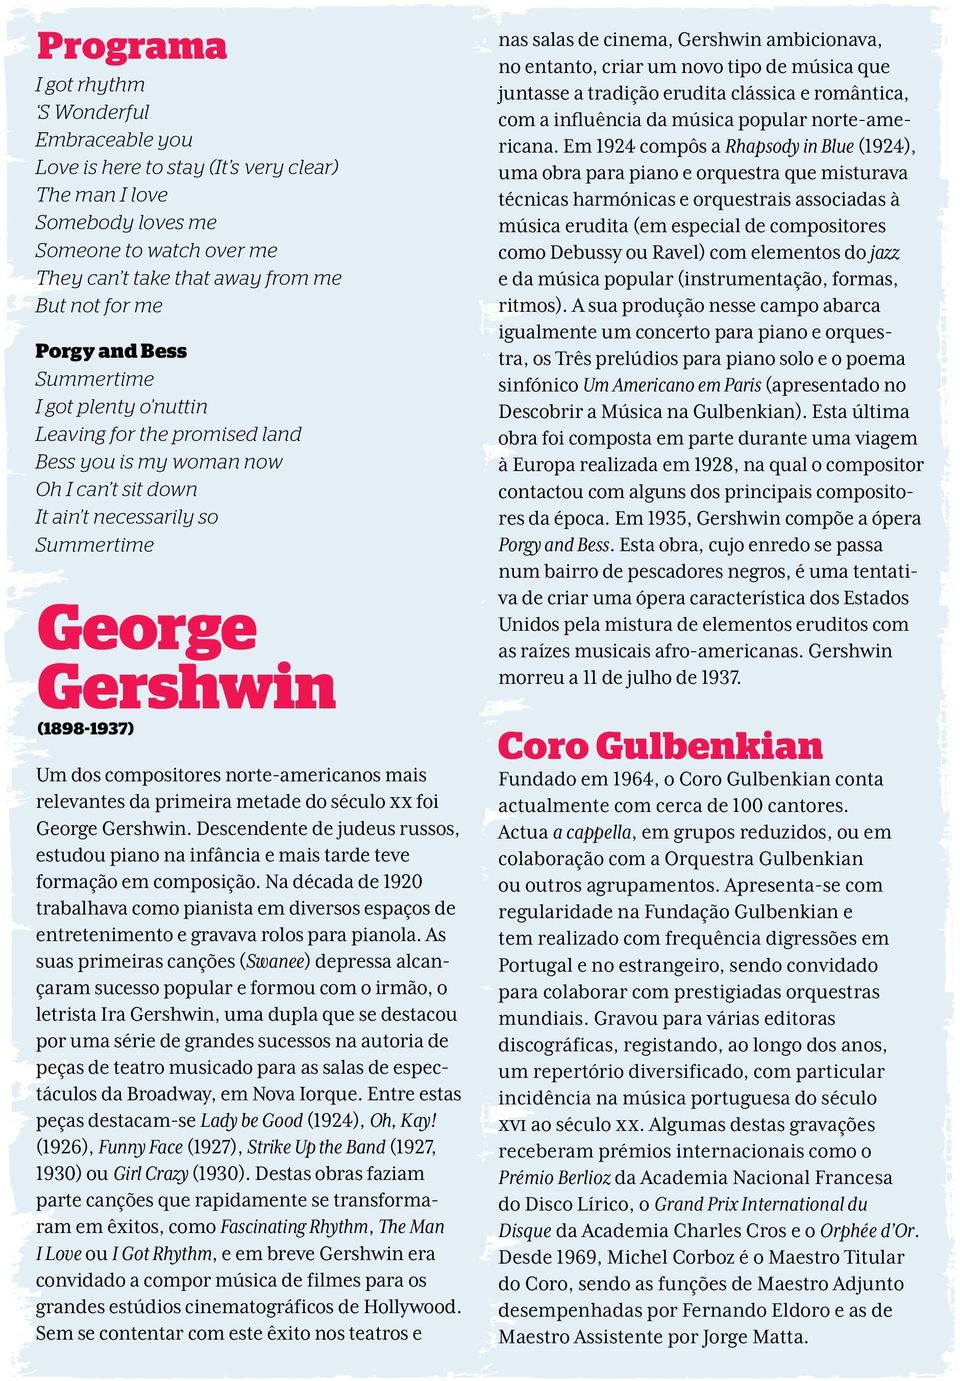 compositores norte-americanos mais relevantes da primeira metade do século XX foi George Gershwin. Descendente de judeus russos, estudou piano na infância e mais tarde teve formação em composição.